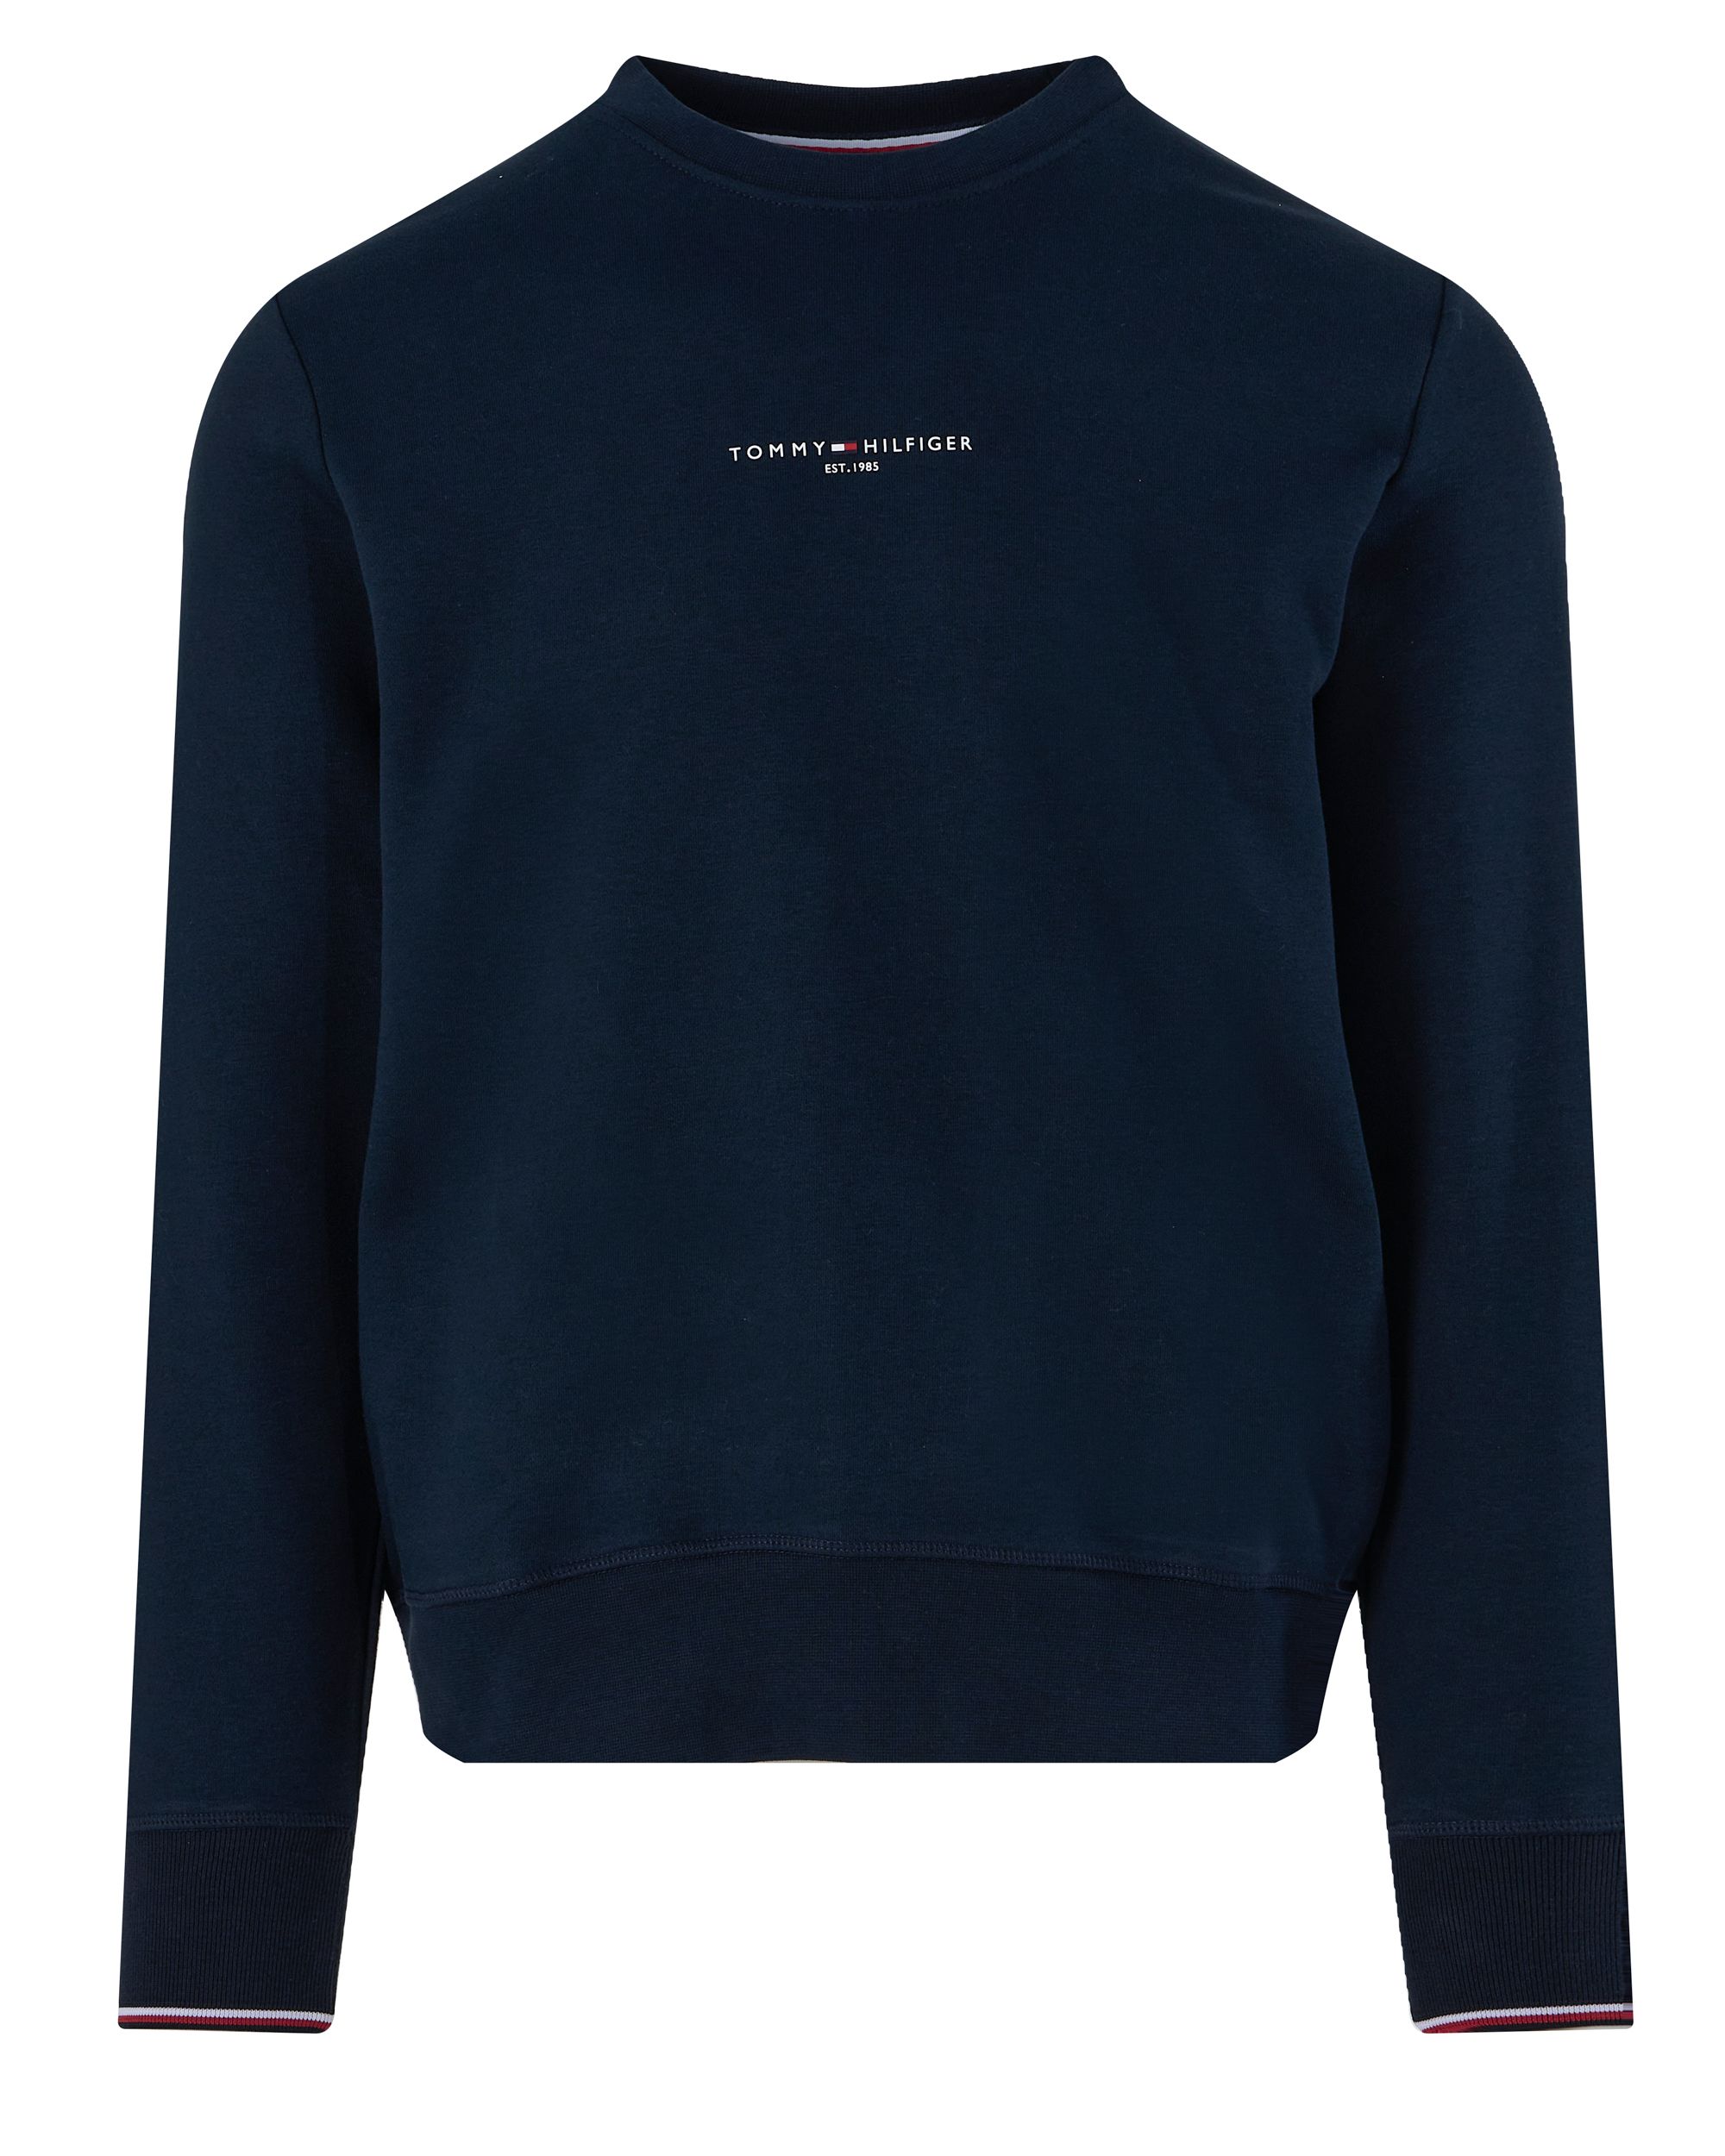 Tommy Hilfiger Menswear Sweater Donker grijs 093020-001-L